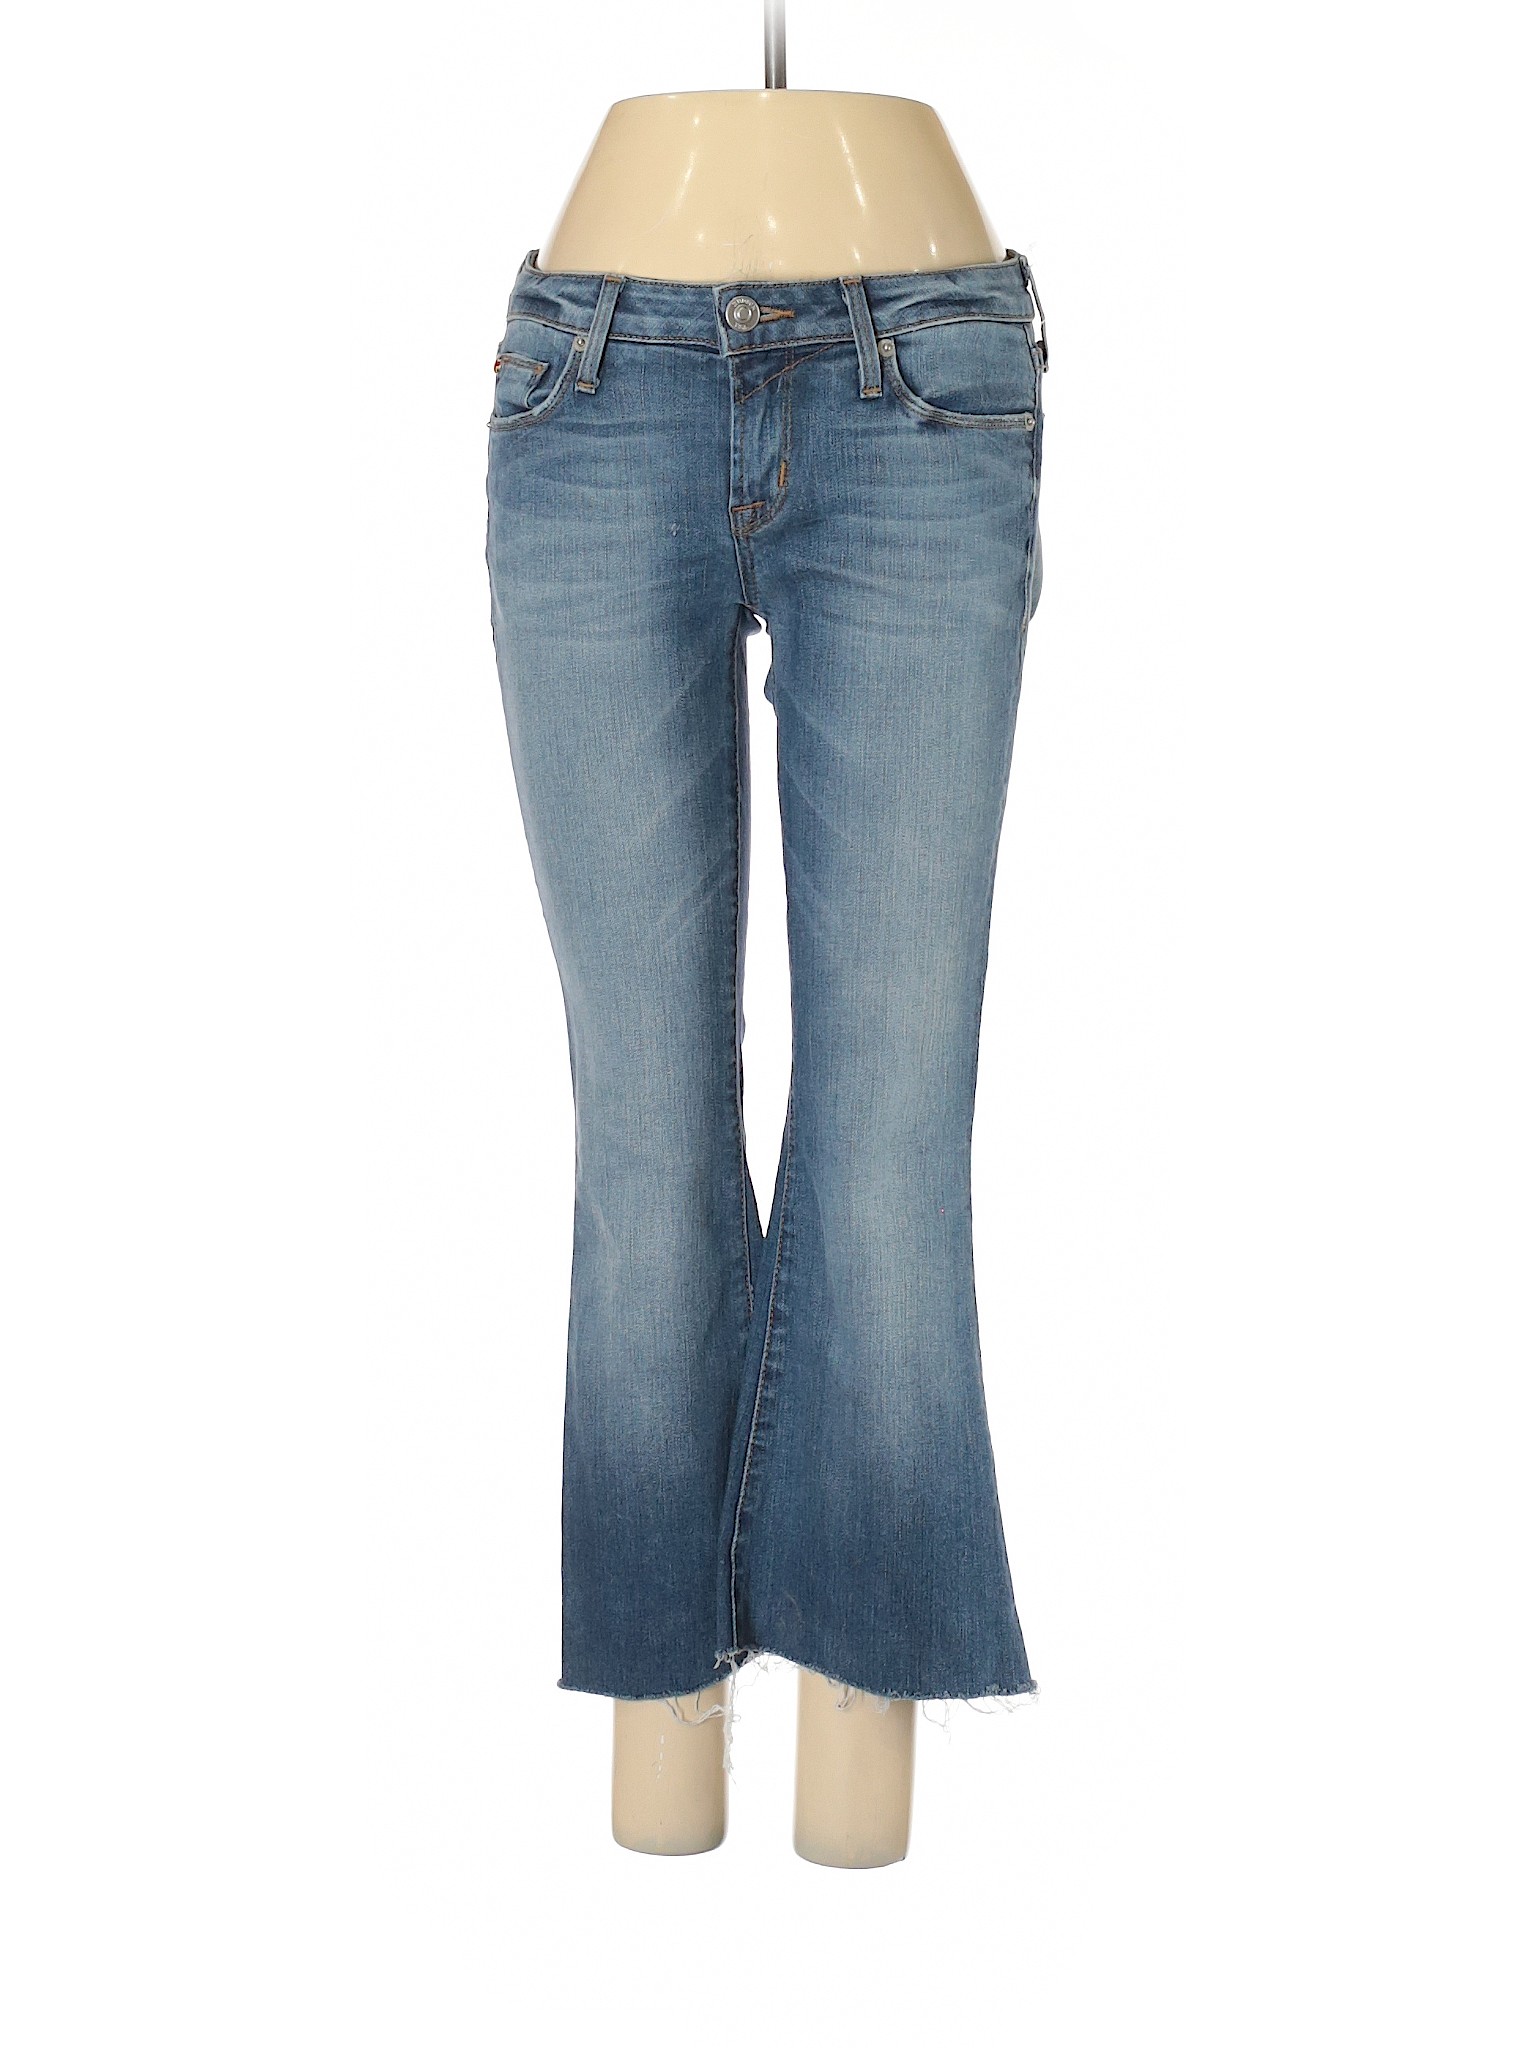 Hudson Jeans Women Blue Jeans 25W | eBay